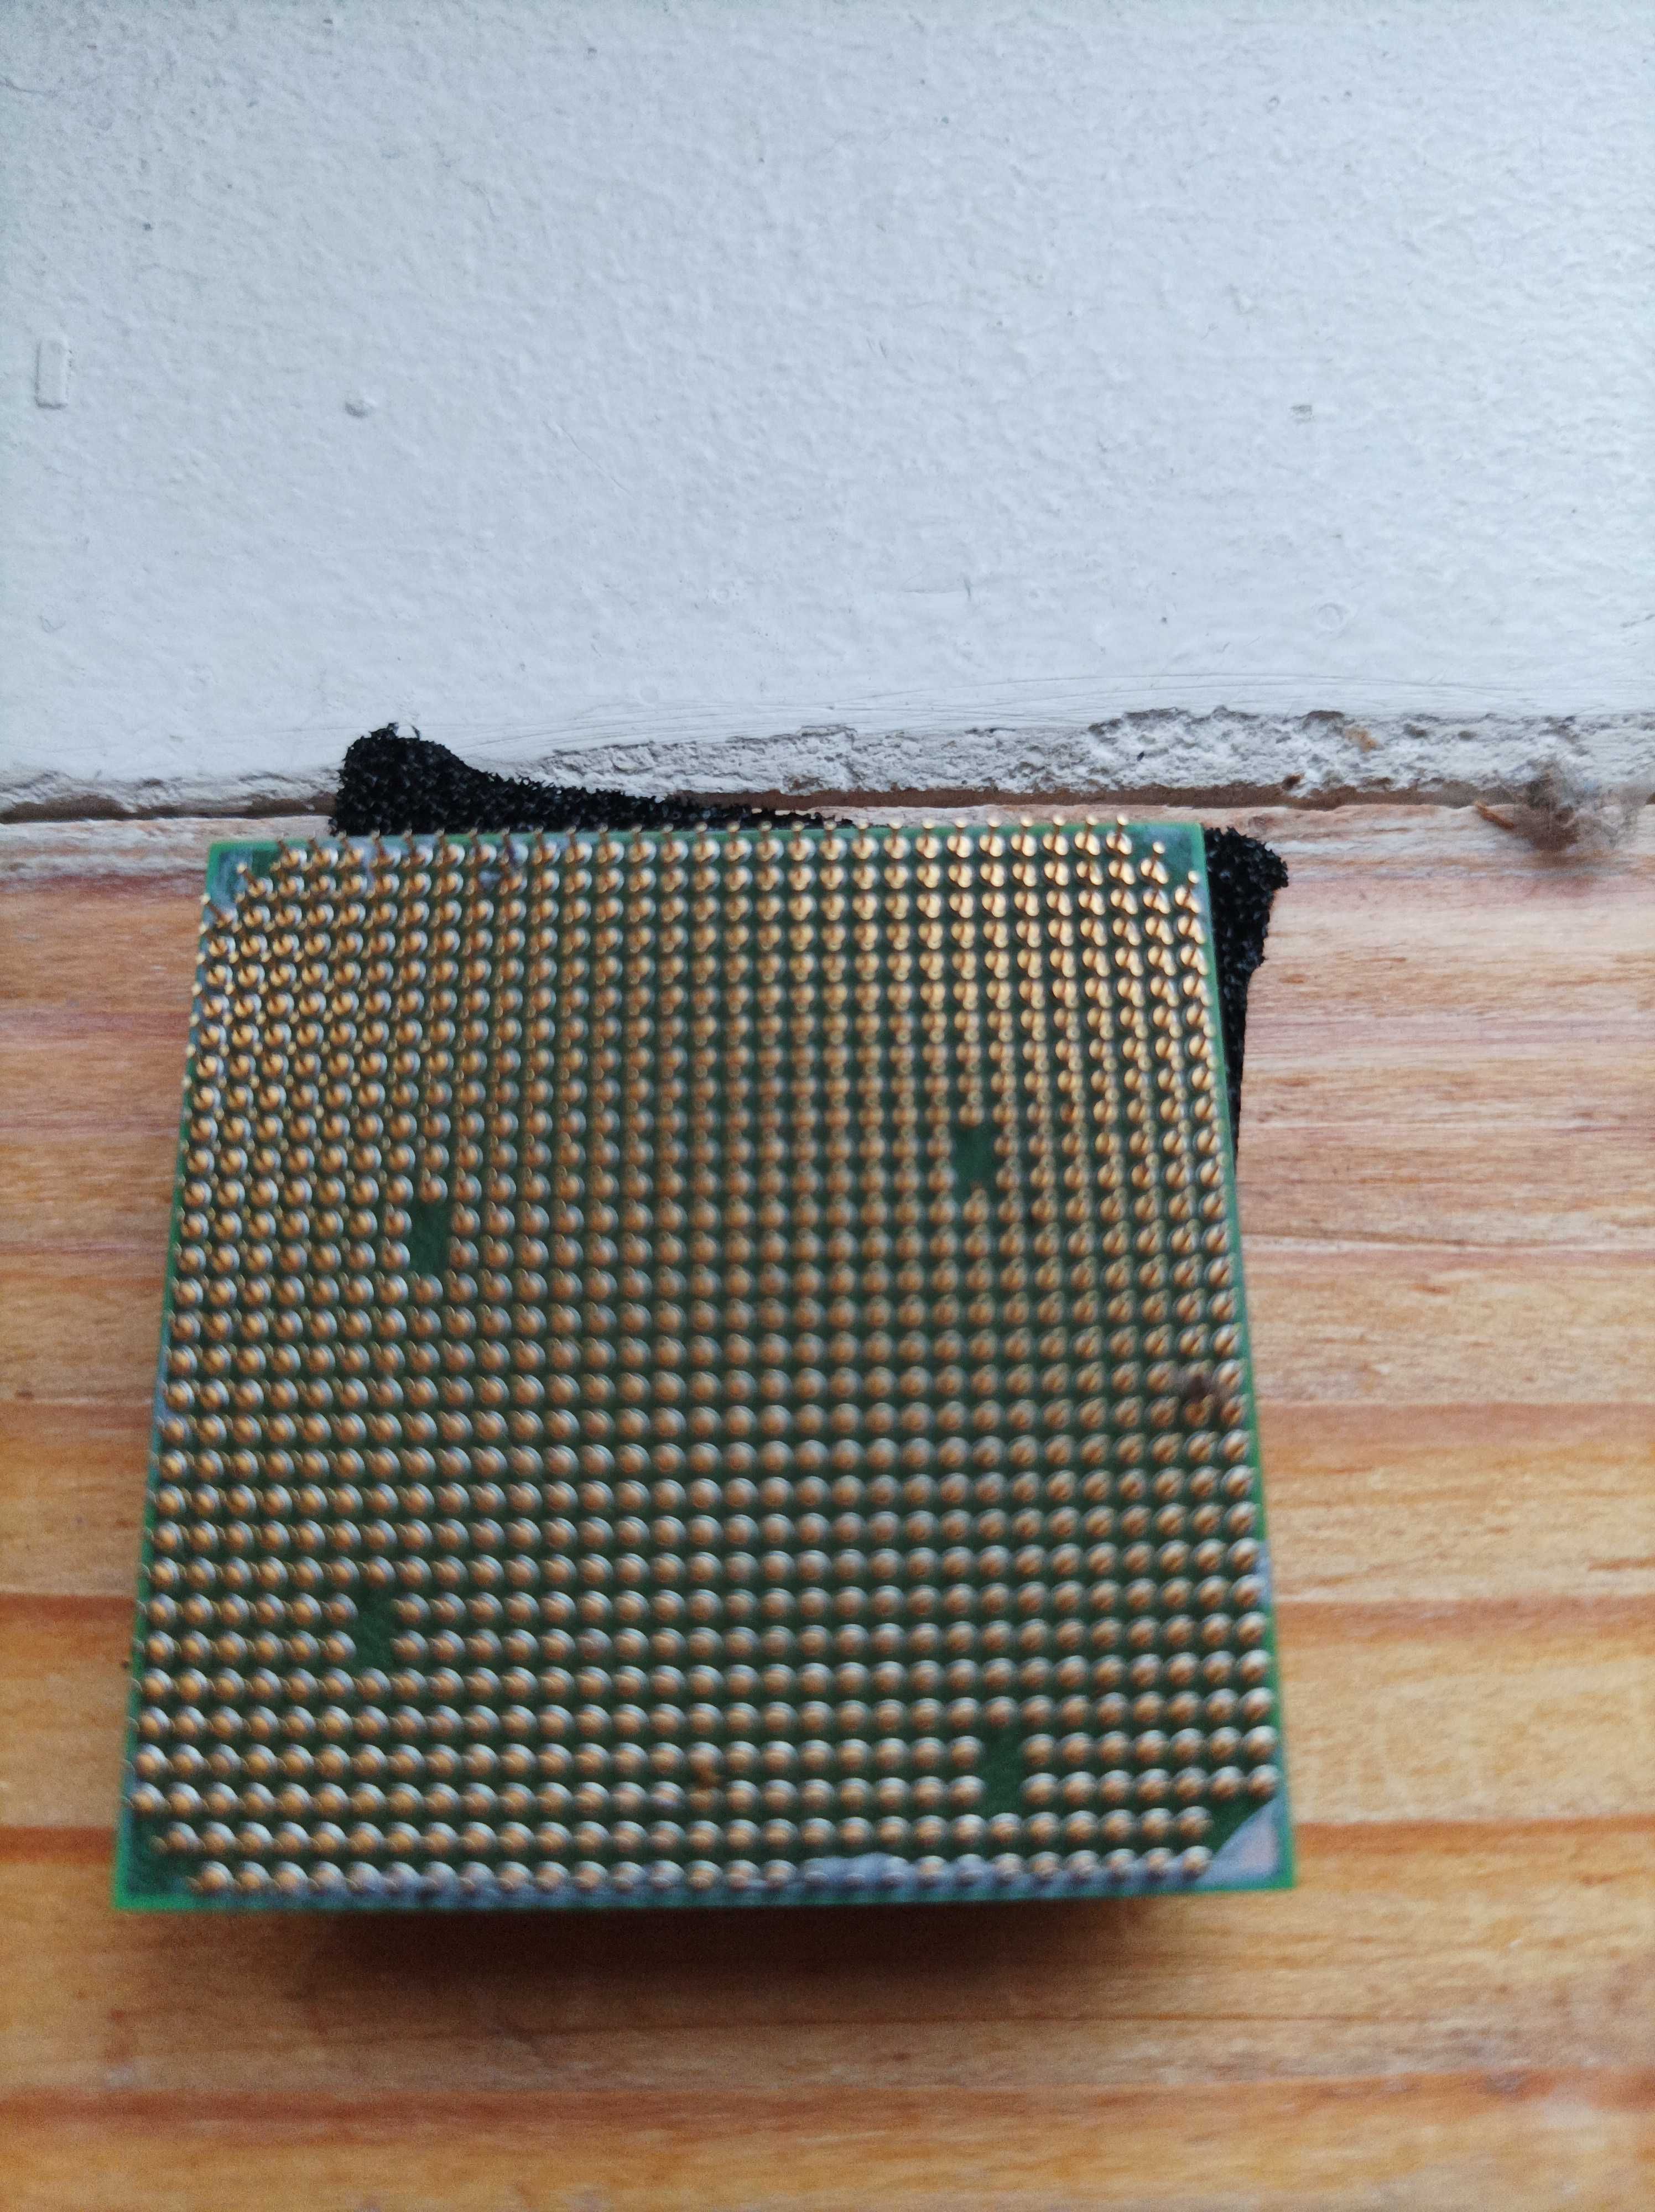 Процесор AMD Sempron 3200+